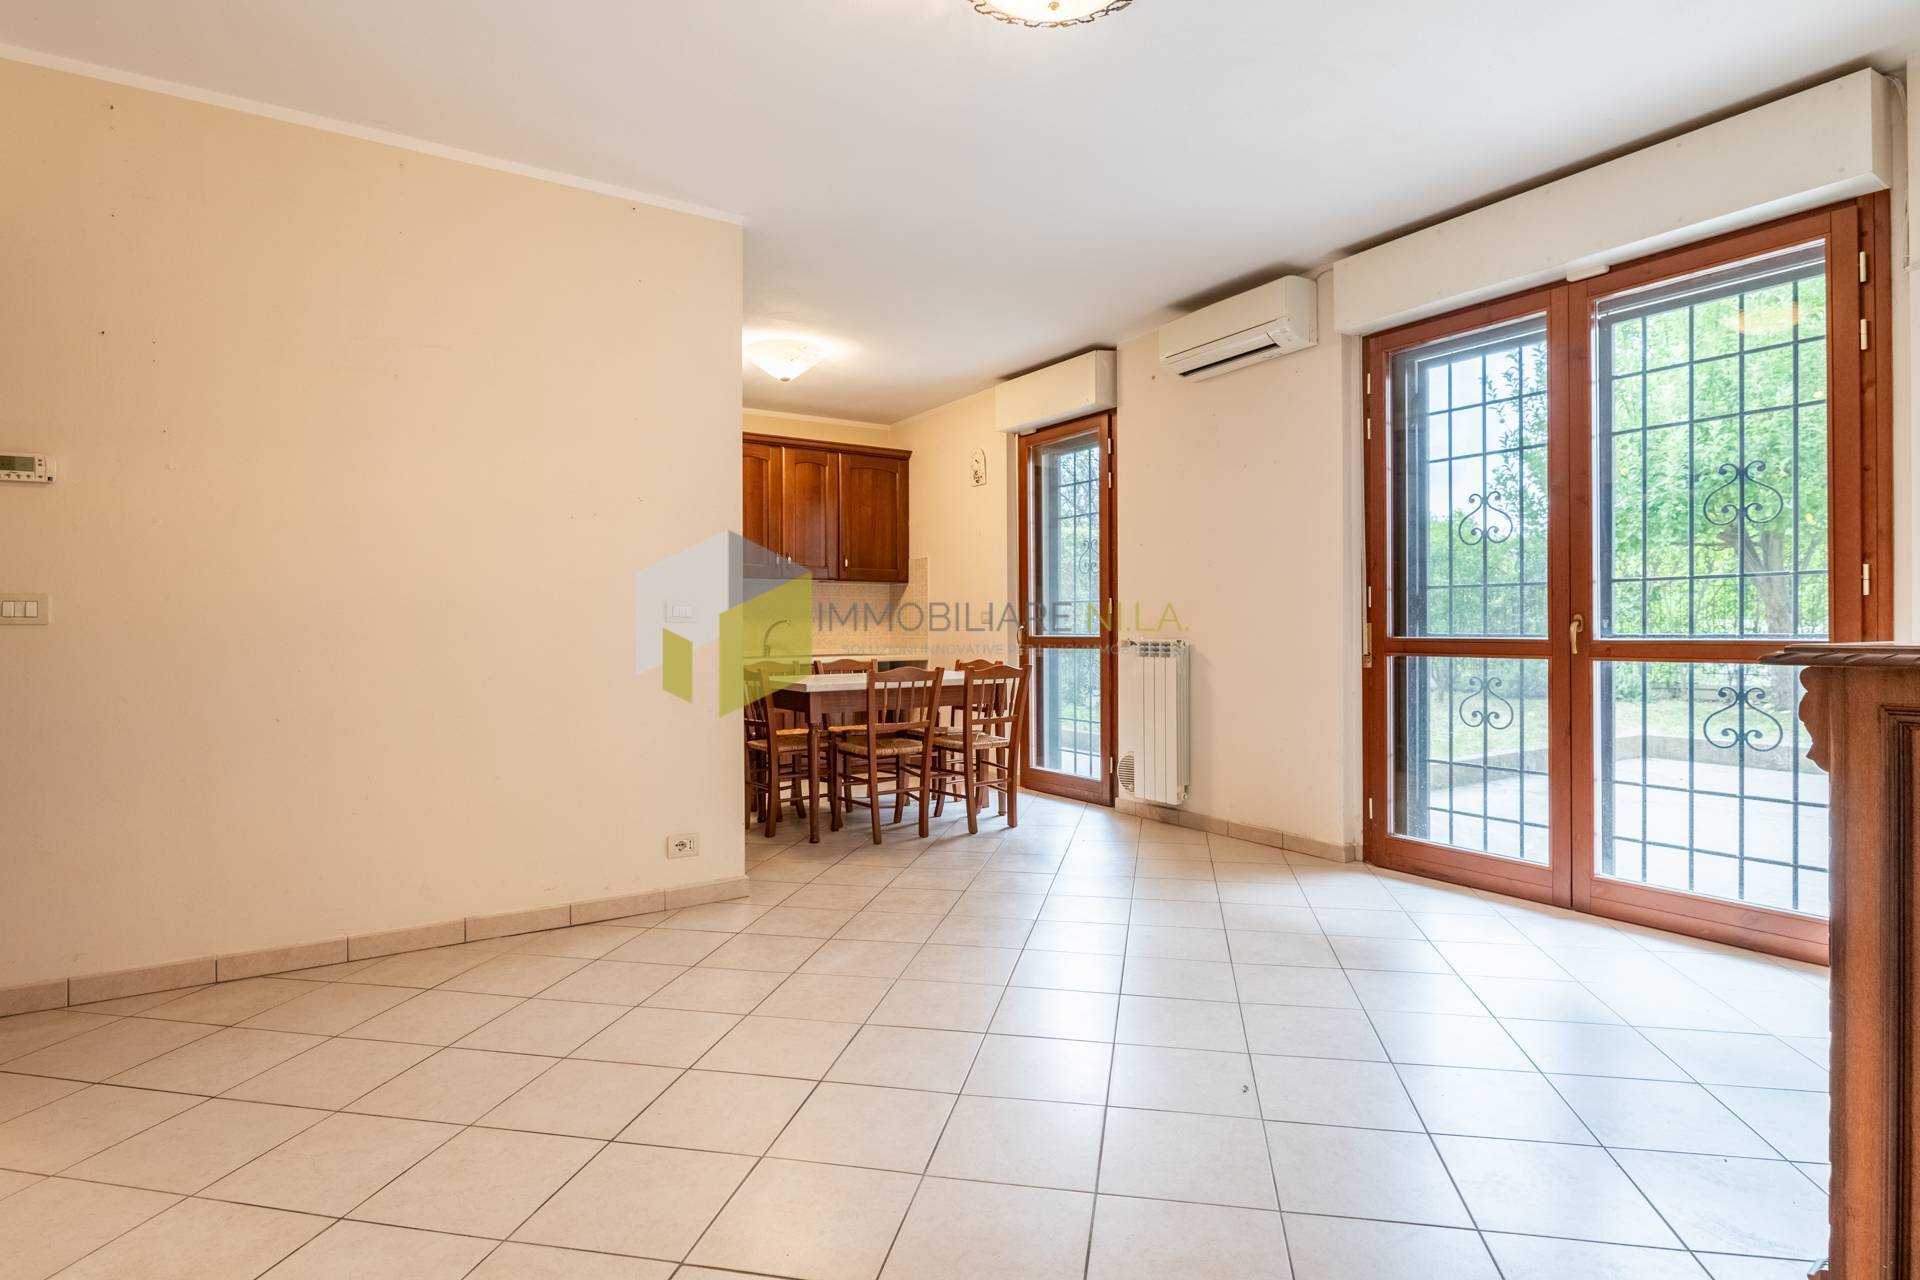 Appartamento in vendita a Pisa, 4 locali, prezzo € 285.000 | PortaleAgenzieImmobiliari.it